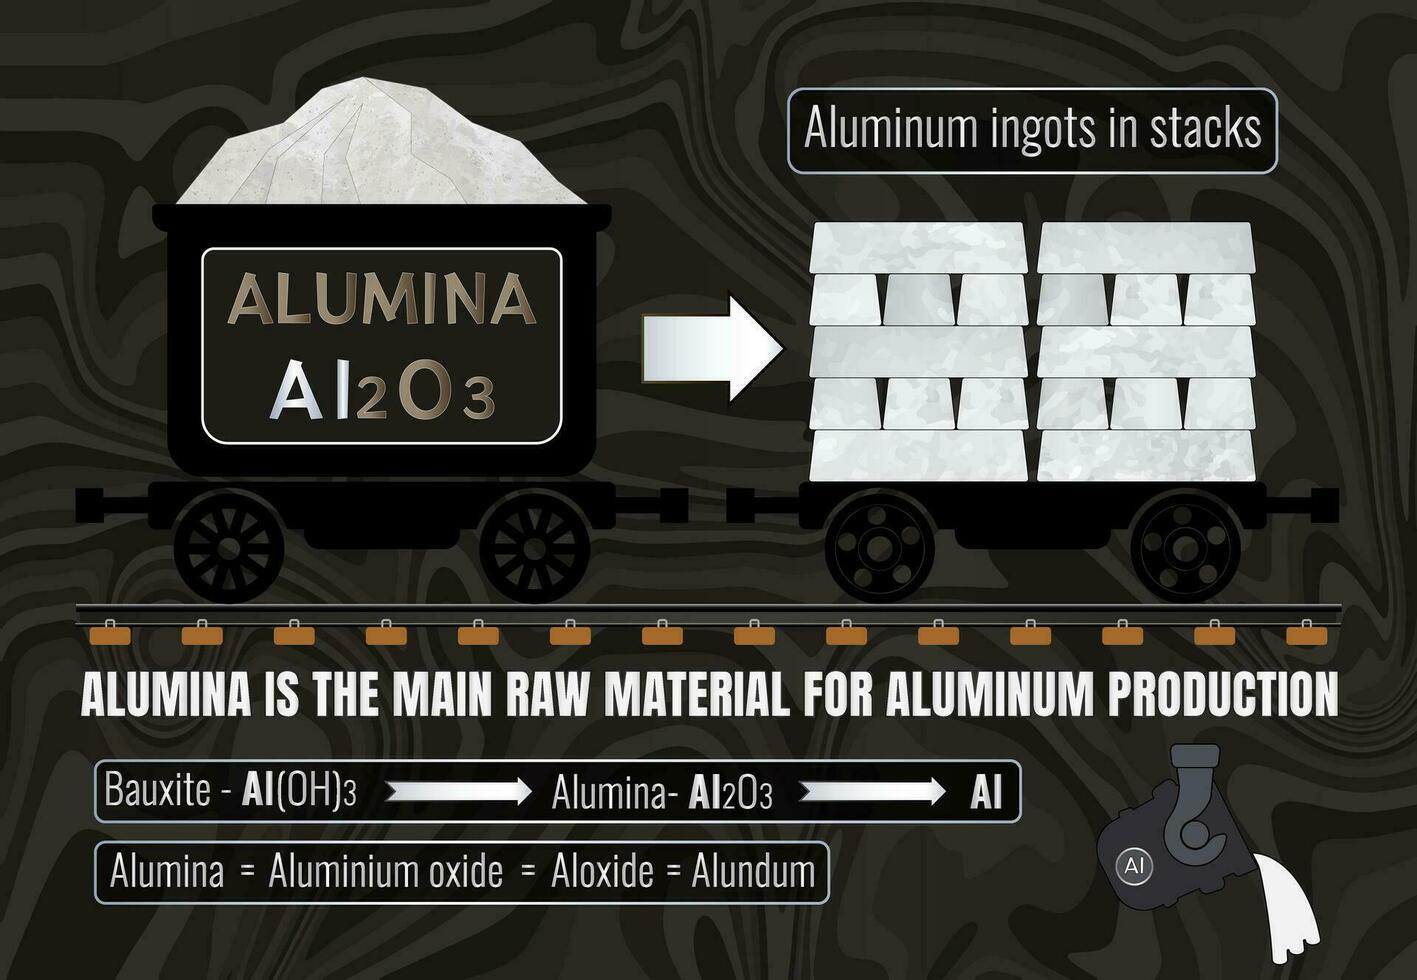 aluminiumoxide is de hoofd rauw materiaal voor aluminium productie. aluminium blokken in stapels. de conversie van aluminiumoxide naar aluminium is gedragen uit via een smelten methode bekend net zo de hall-heroul werkwijze. vector